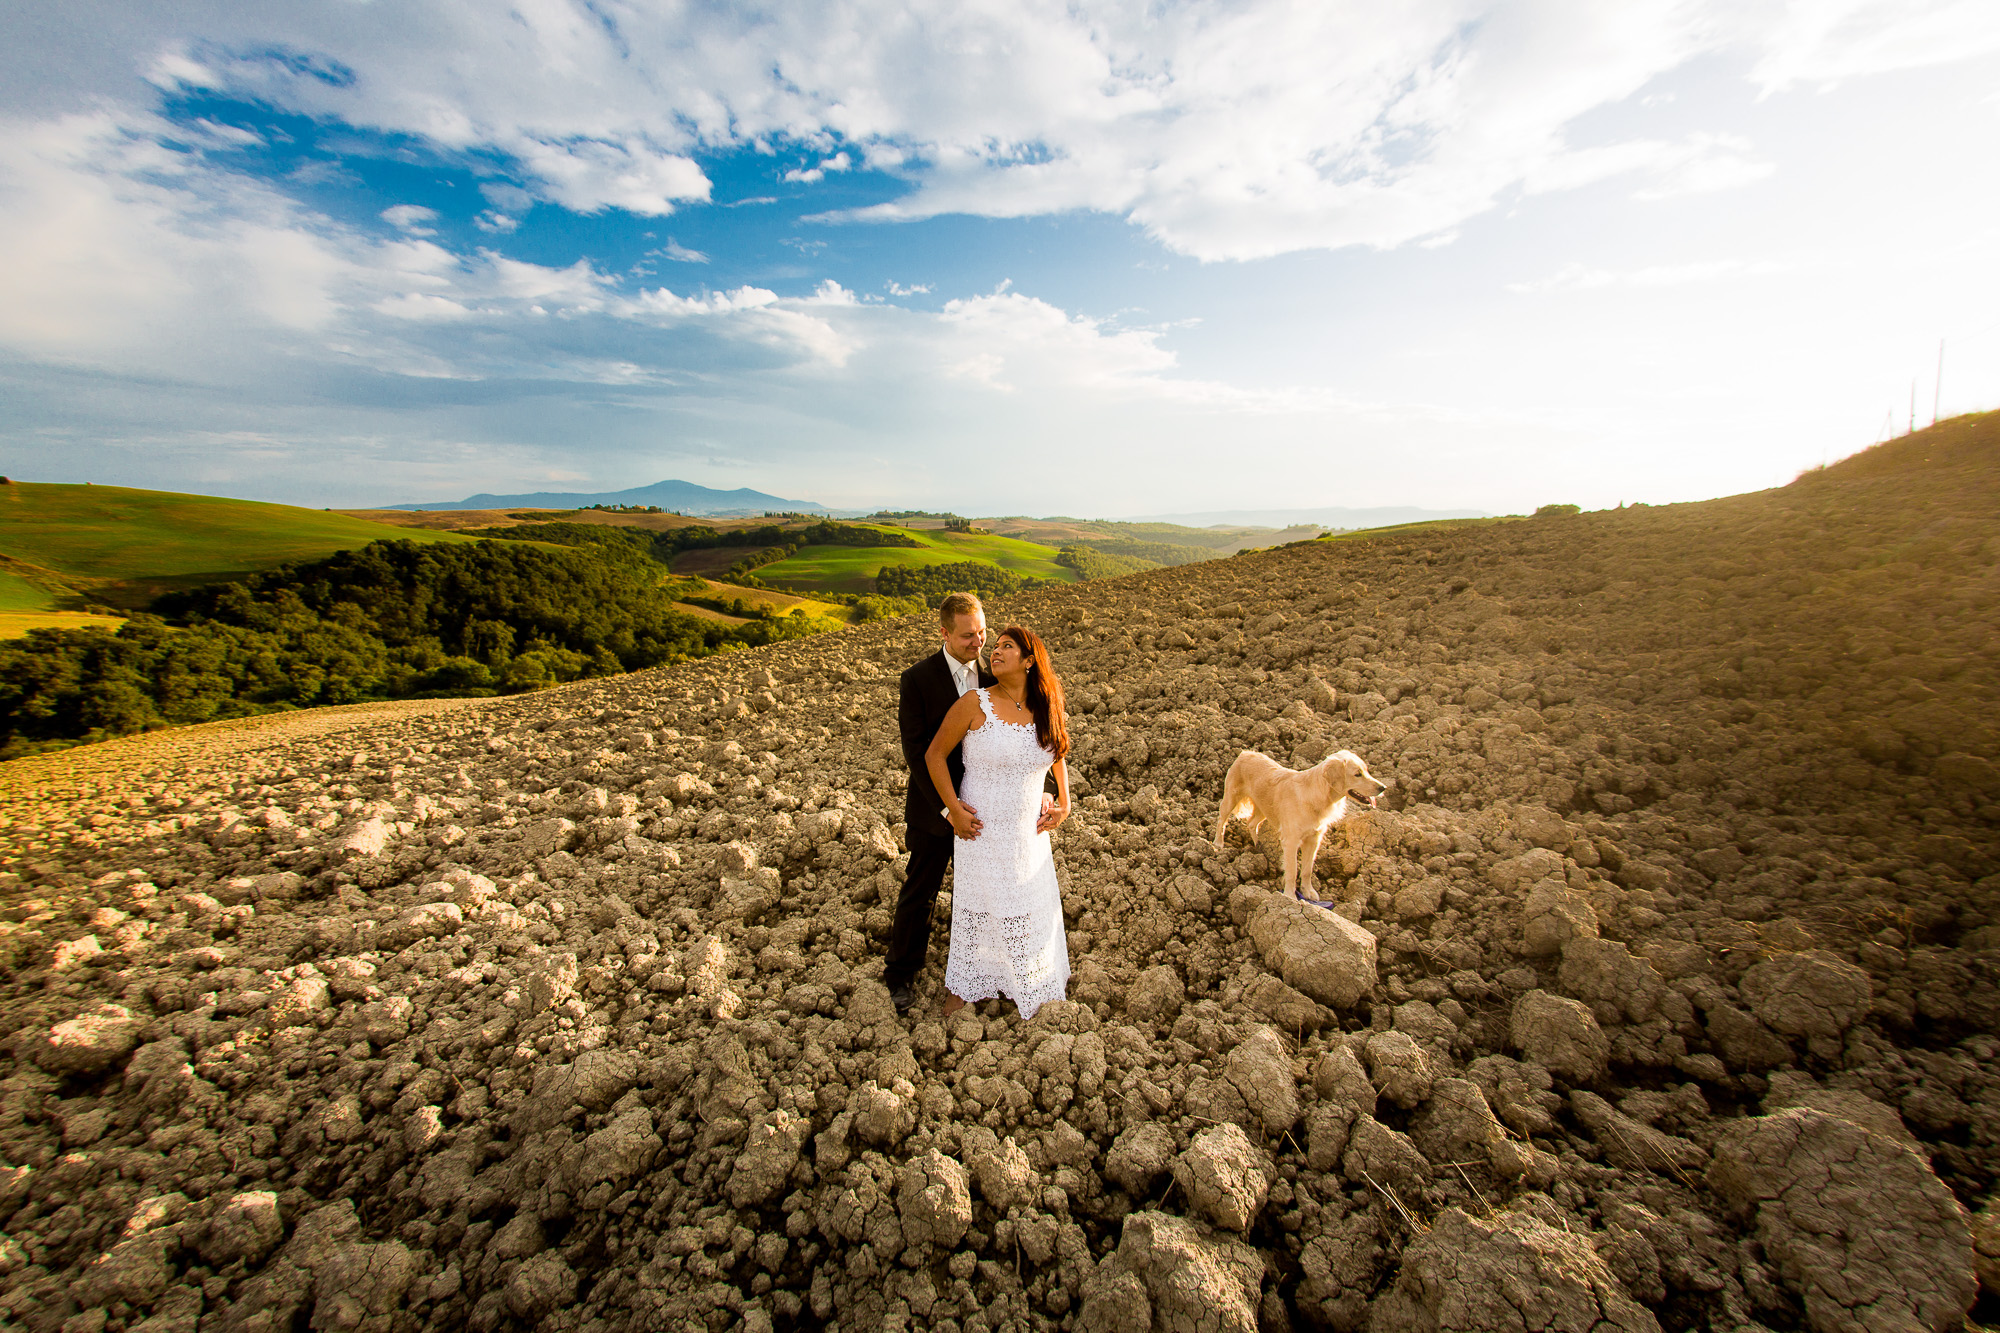 Hochzeitsbilder mit Hund in der Toscana in Italien - Traumhafte Landschaft